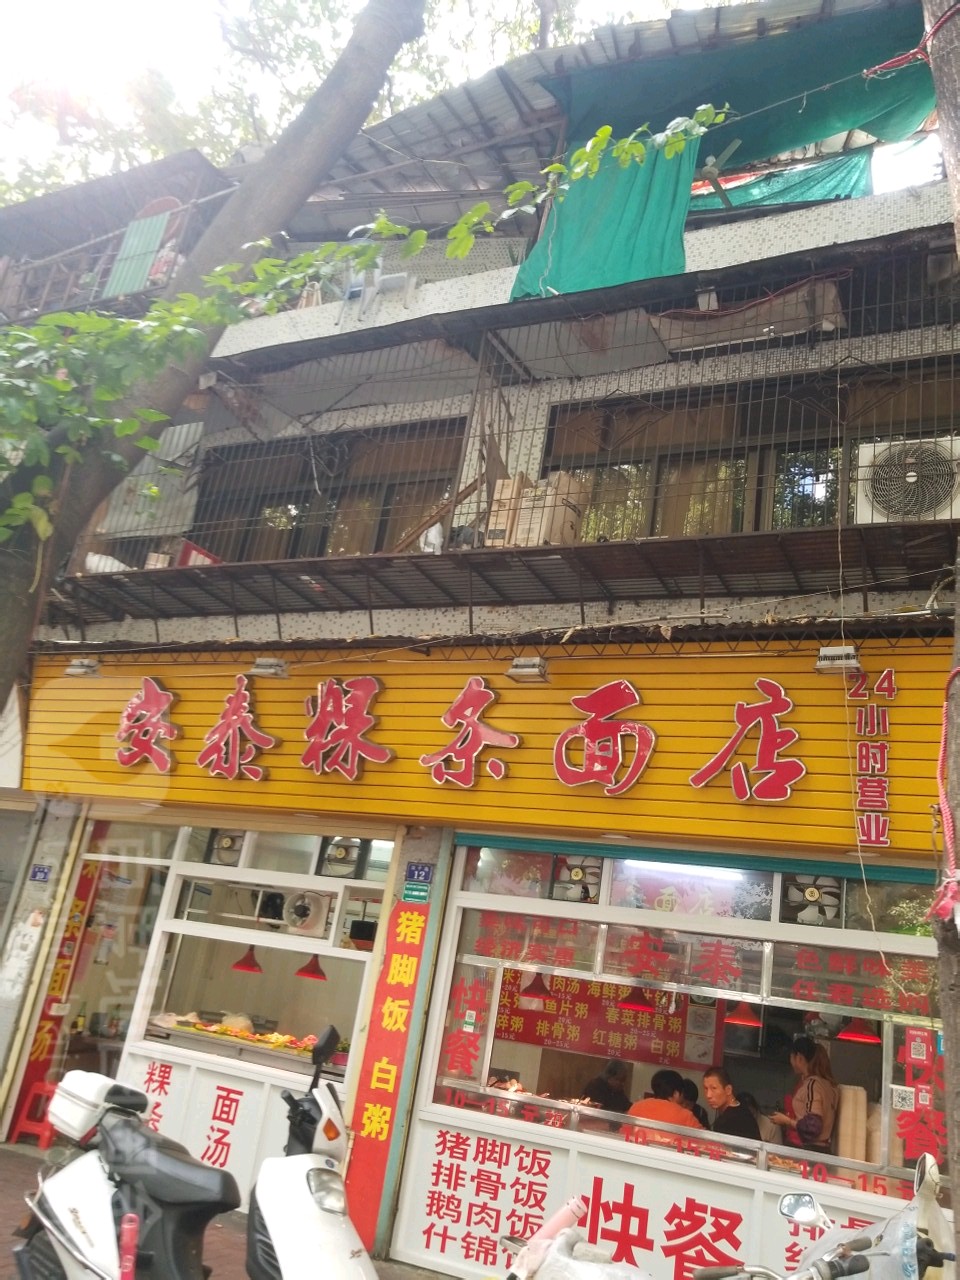 安泰粿条面店